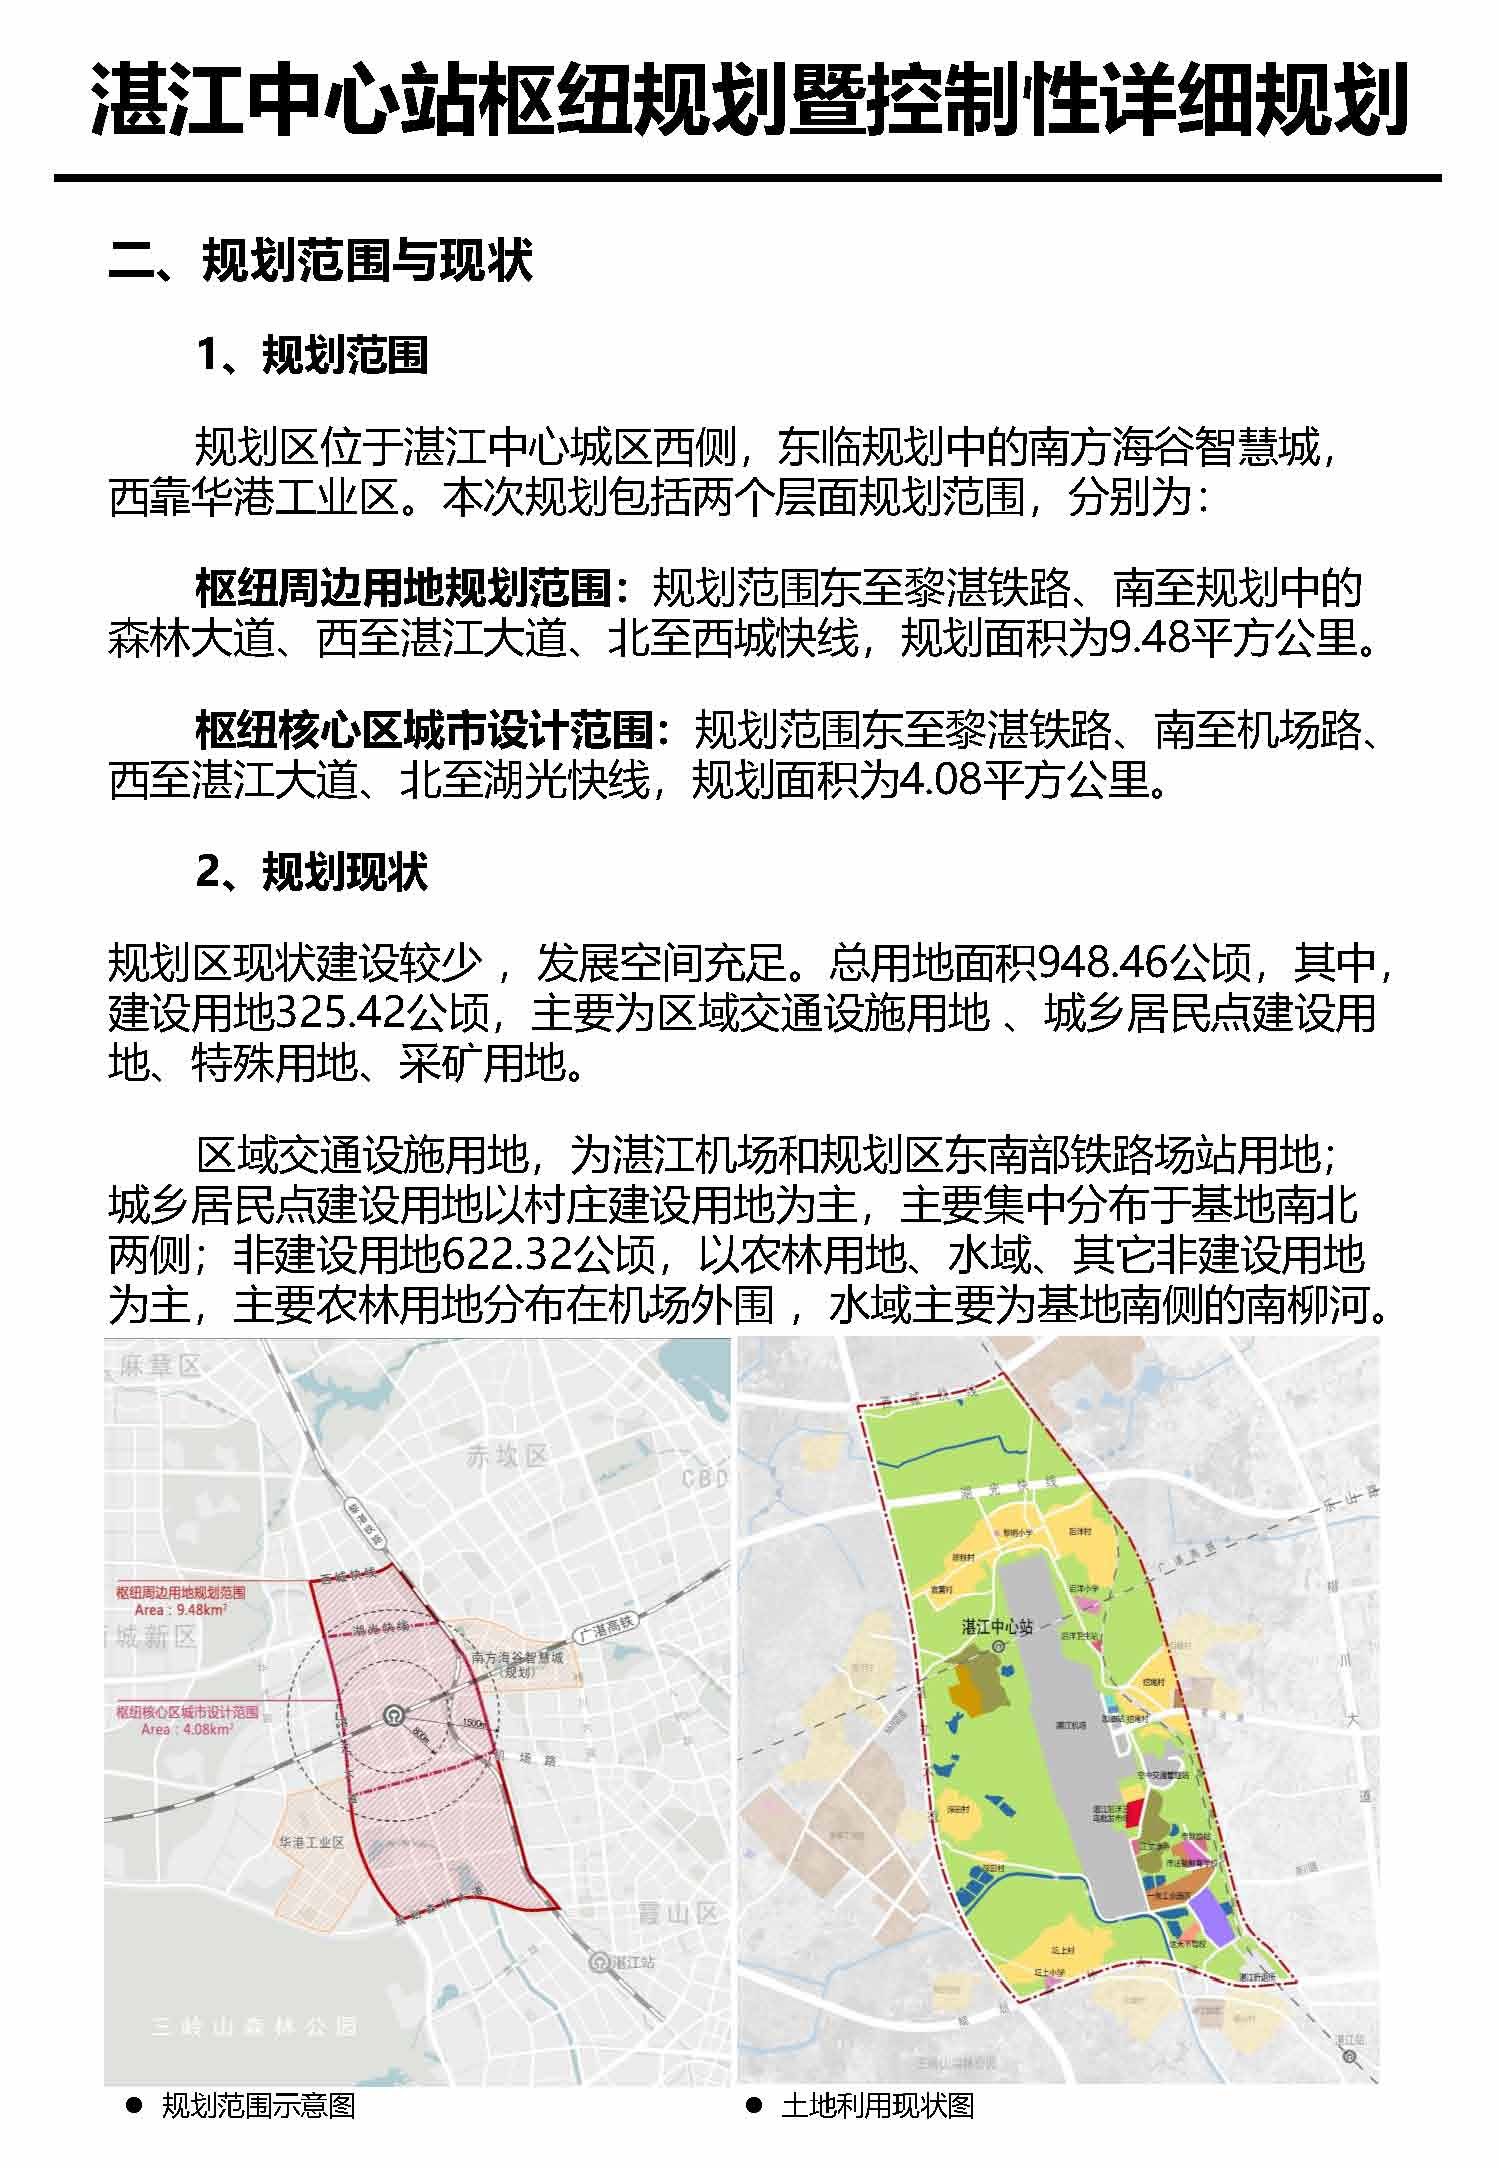 湛江市中心枢纽地区规划暨控制线详细规划报批后公告_页面_4.jpg